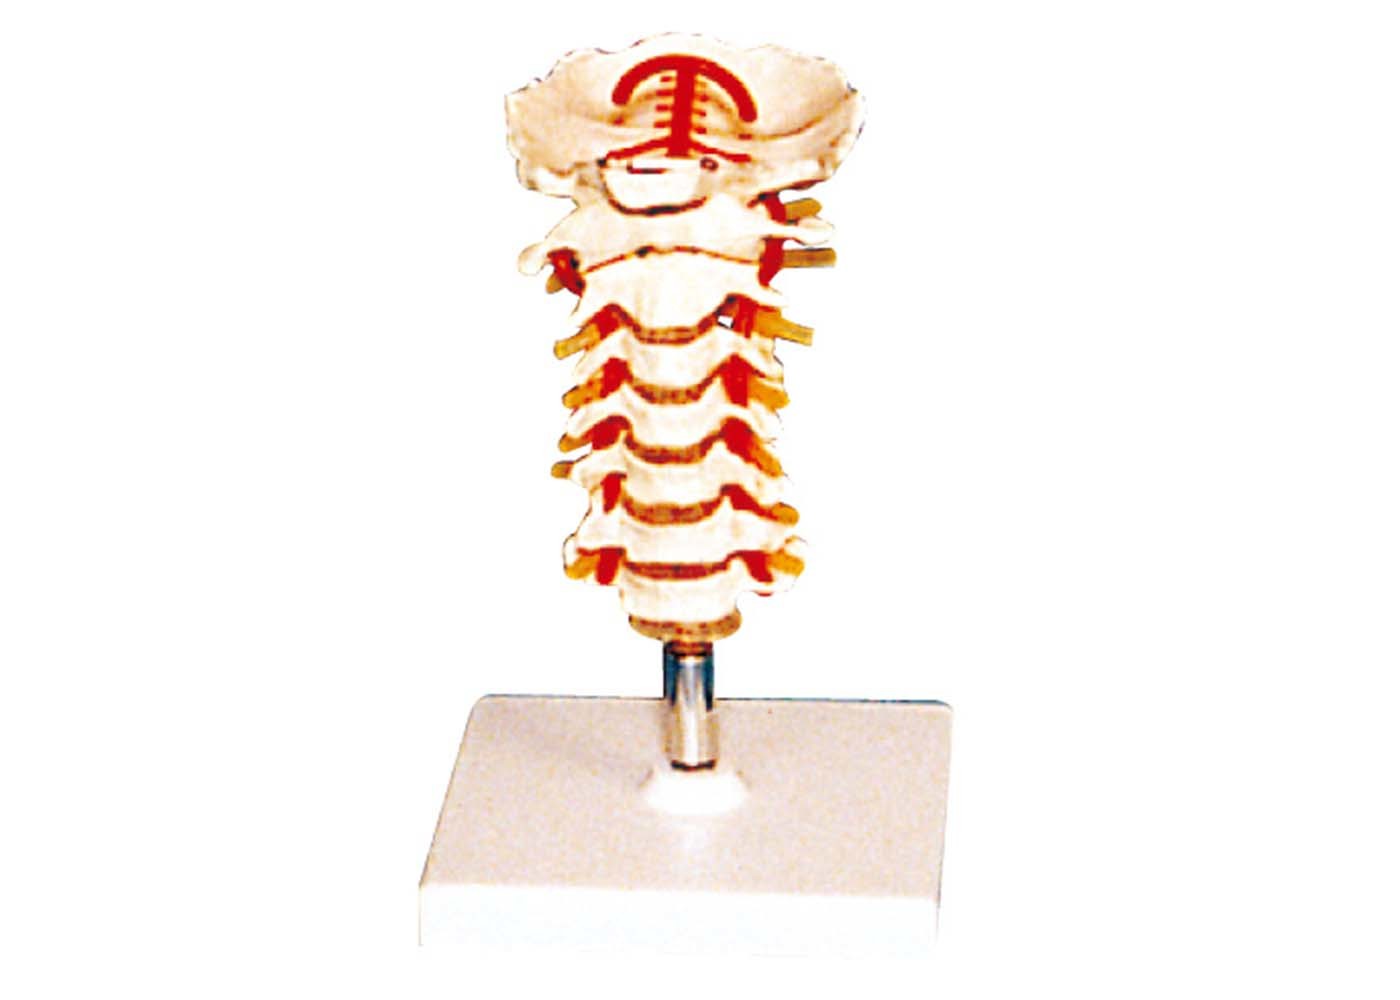 Vertebra vertebrale con il modello umano di anatomia dello stander per la scuola infermieri